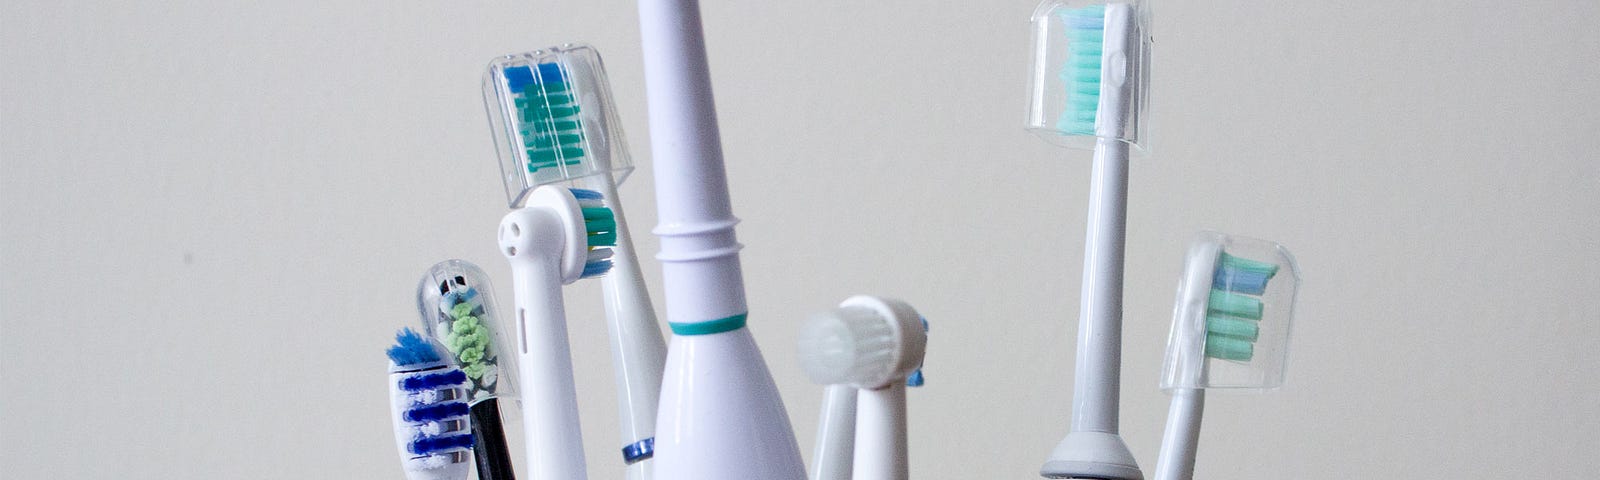 электрические зубные щетки польза или вред